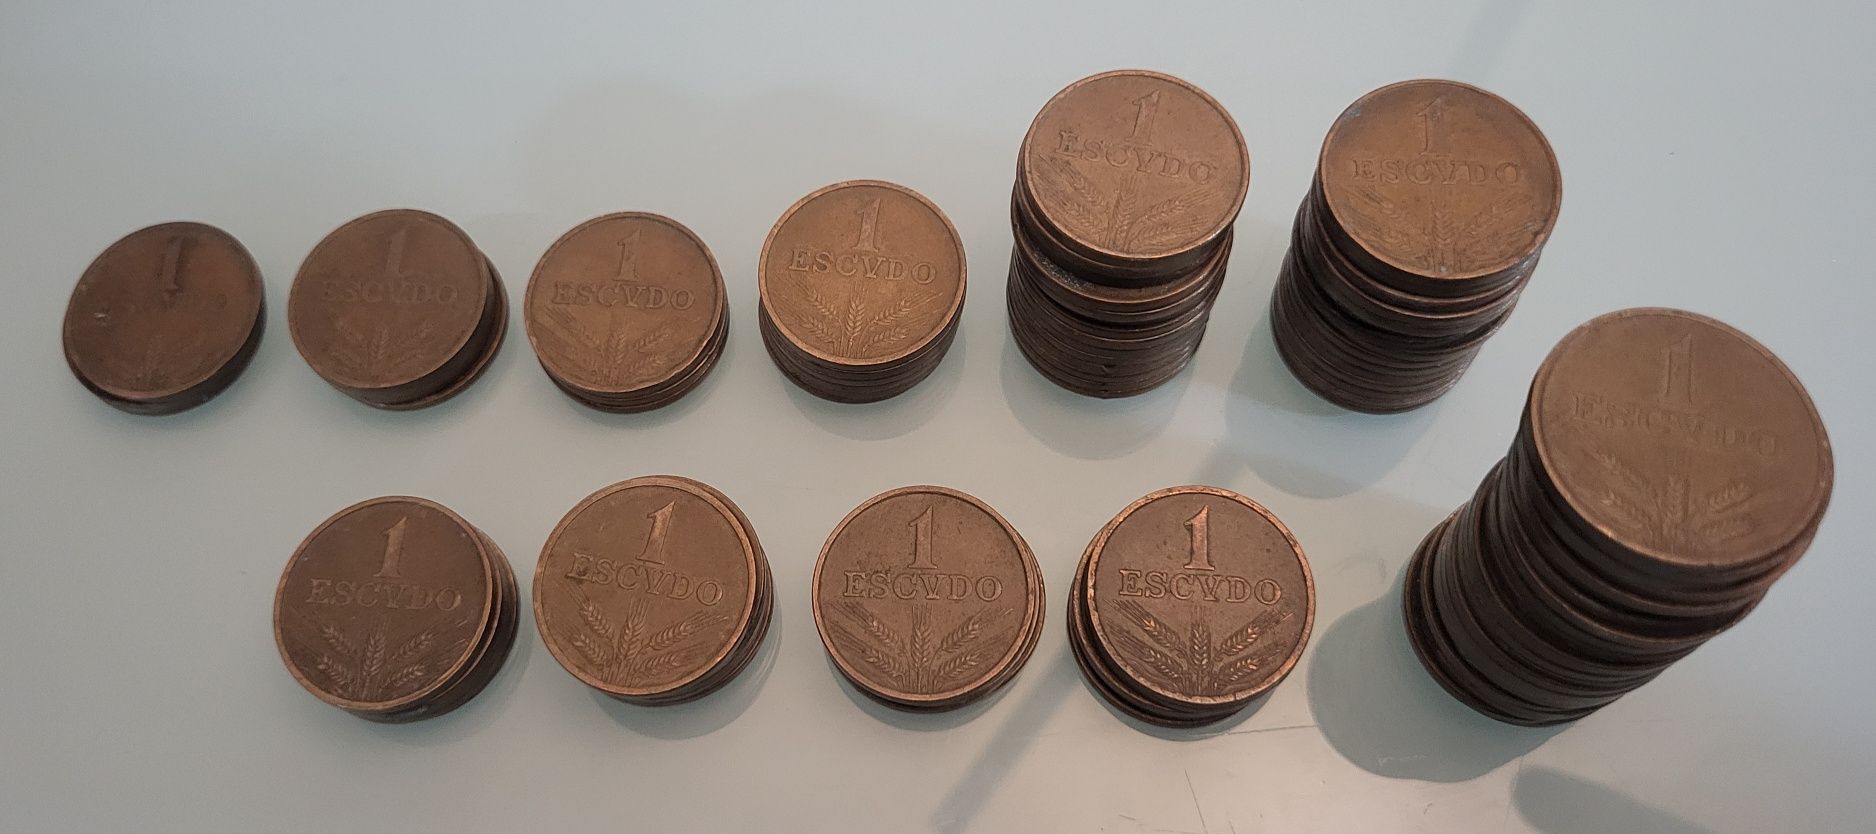 Moedas de 1 Escudo de 1969 a 1979 (lote com 91 moedas)